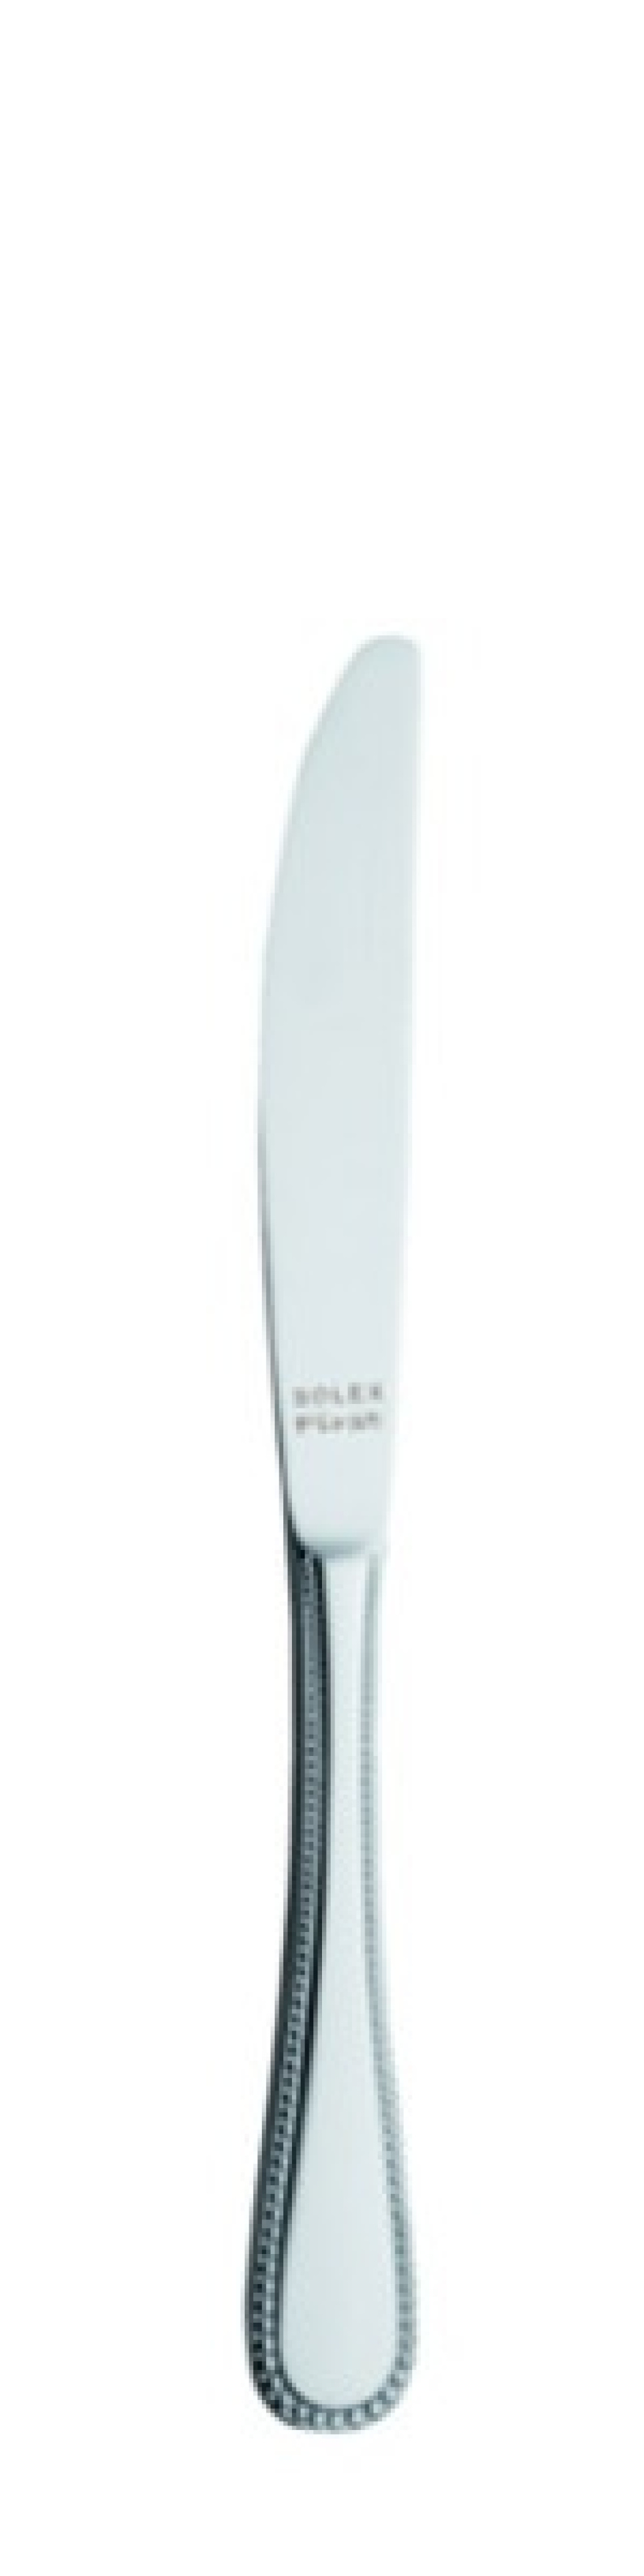 Perle Tafelmesser 226 mm - Solex in der Gruppe Tischgedeck / Besteck / Messer bei The Kitchen Lab (1284-21422)